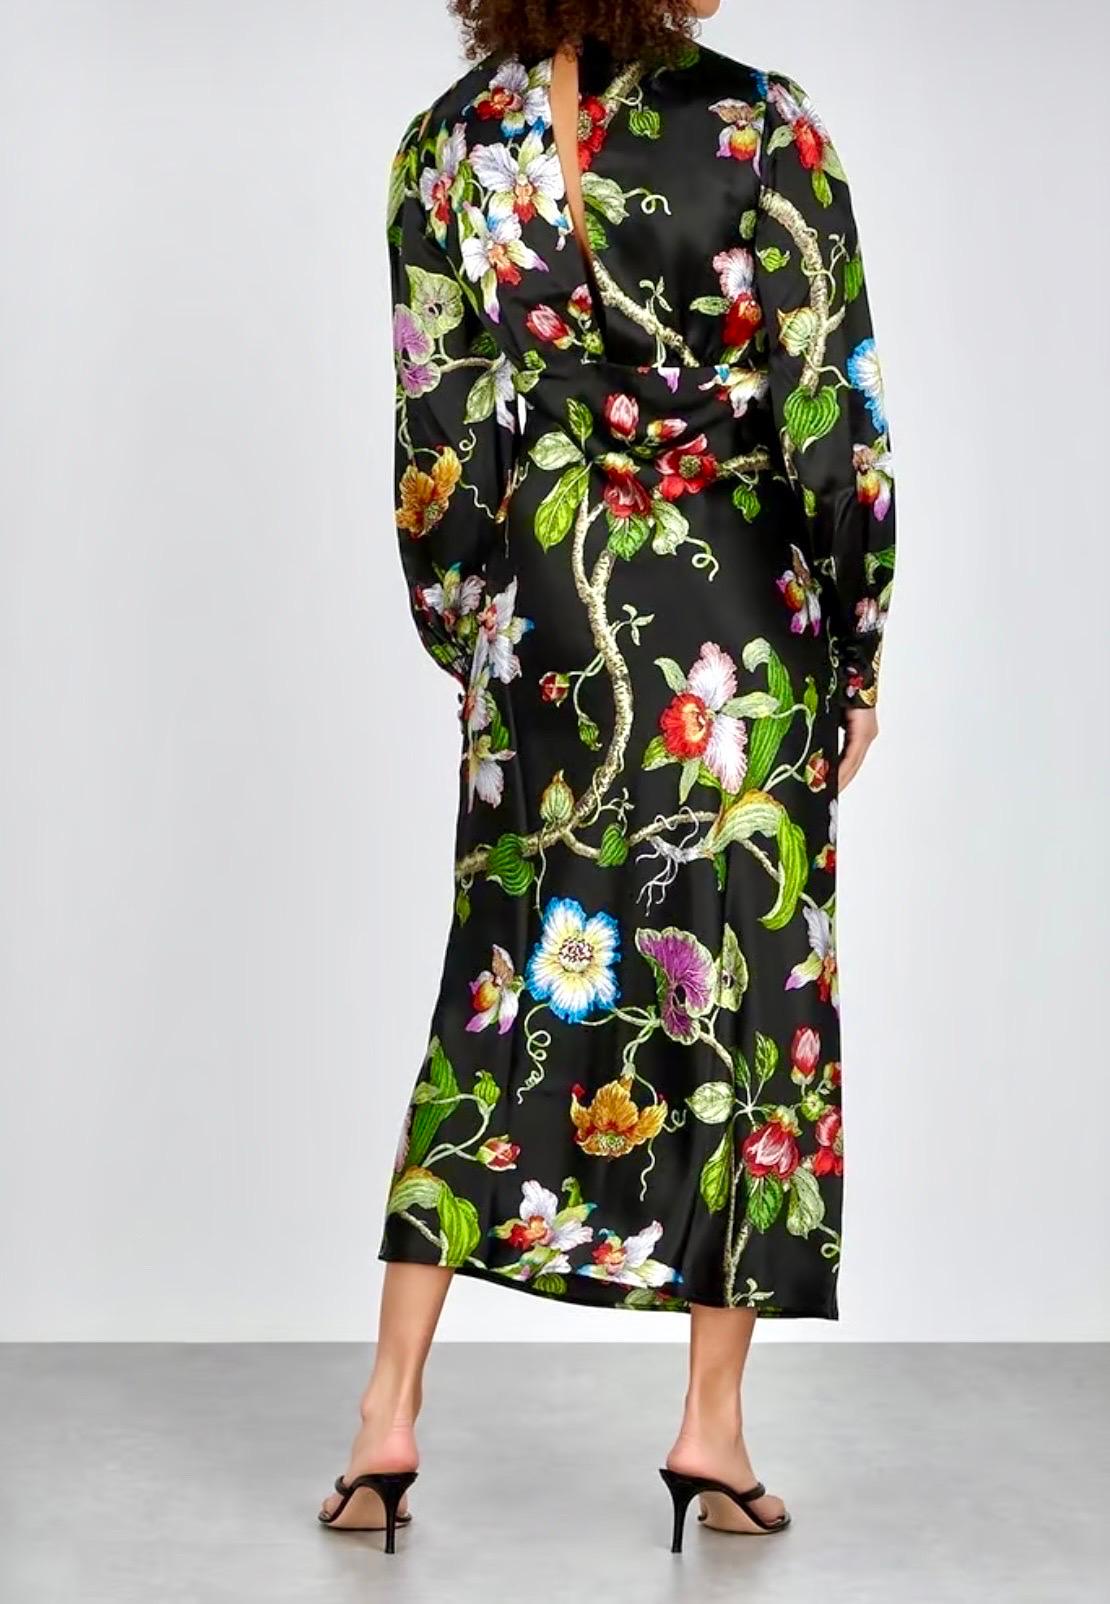 UNWORN Olivia von Halle Luxurious Silk Print Floral Maxi Dress M In Excellent Condition In Switzerland, CH